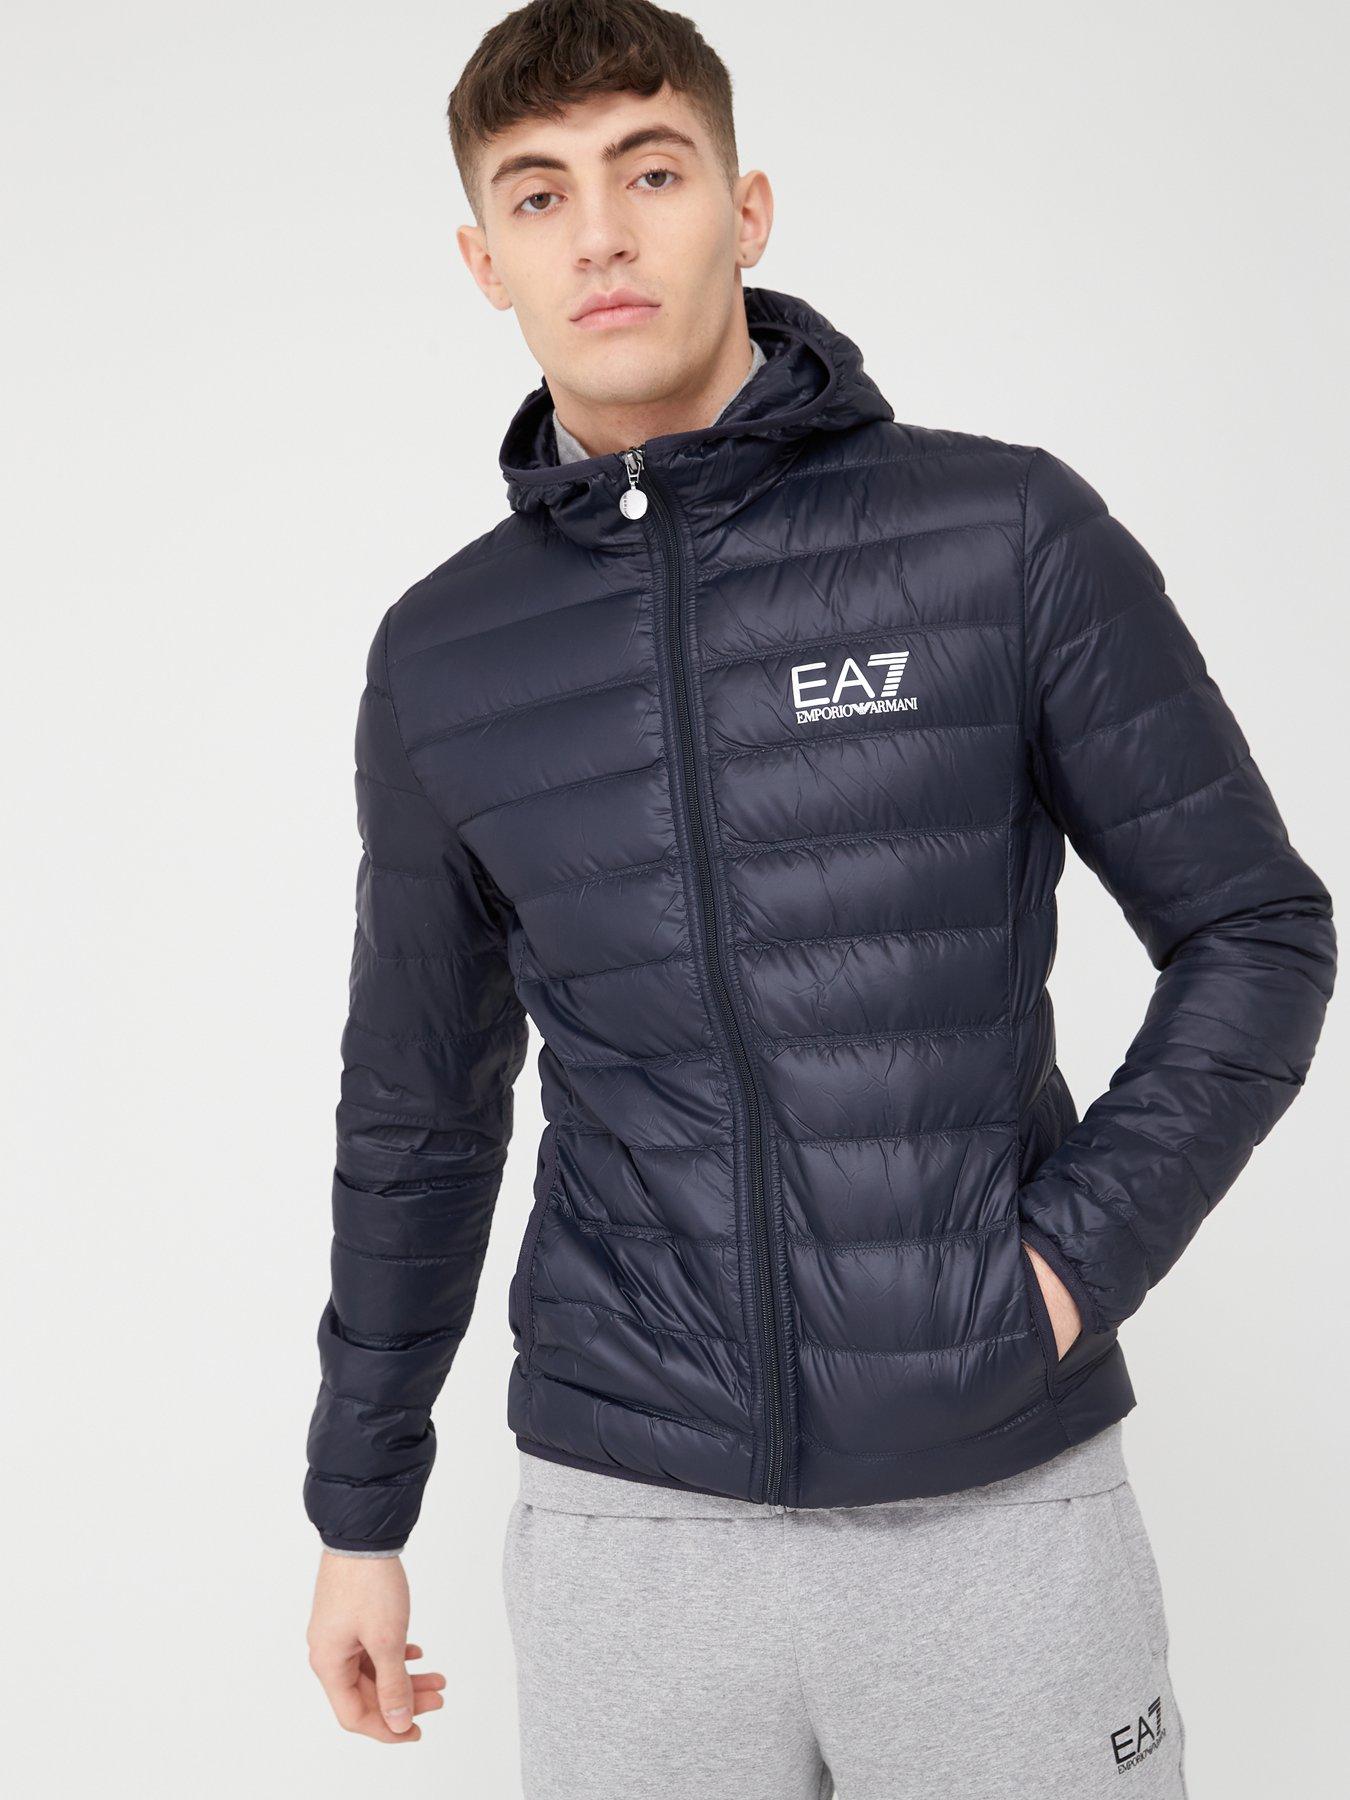 ea7 jacket